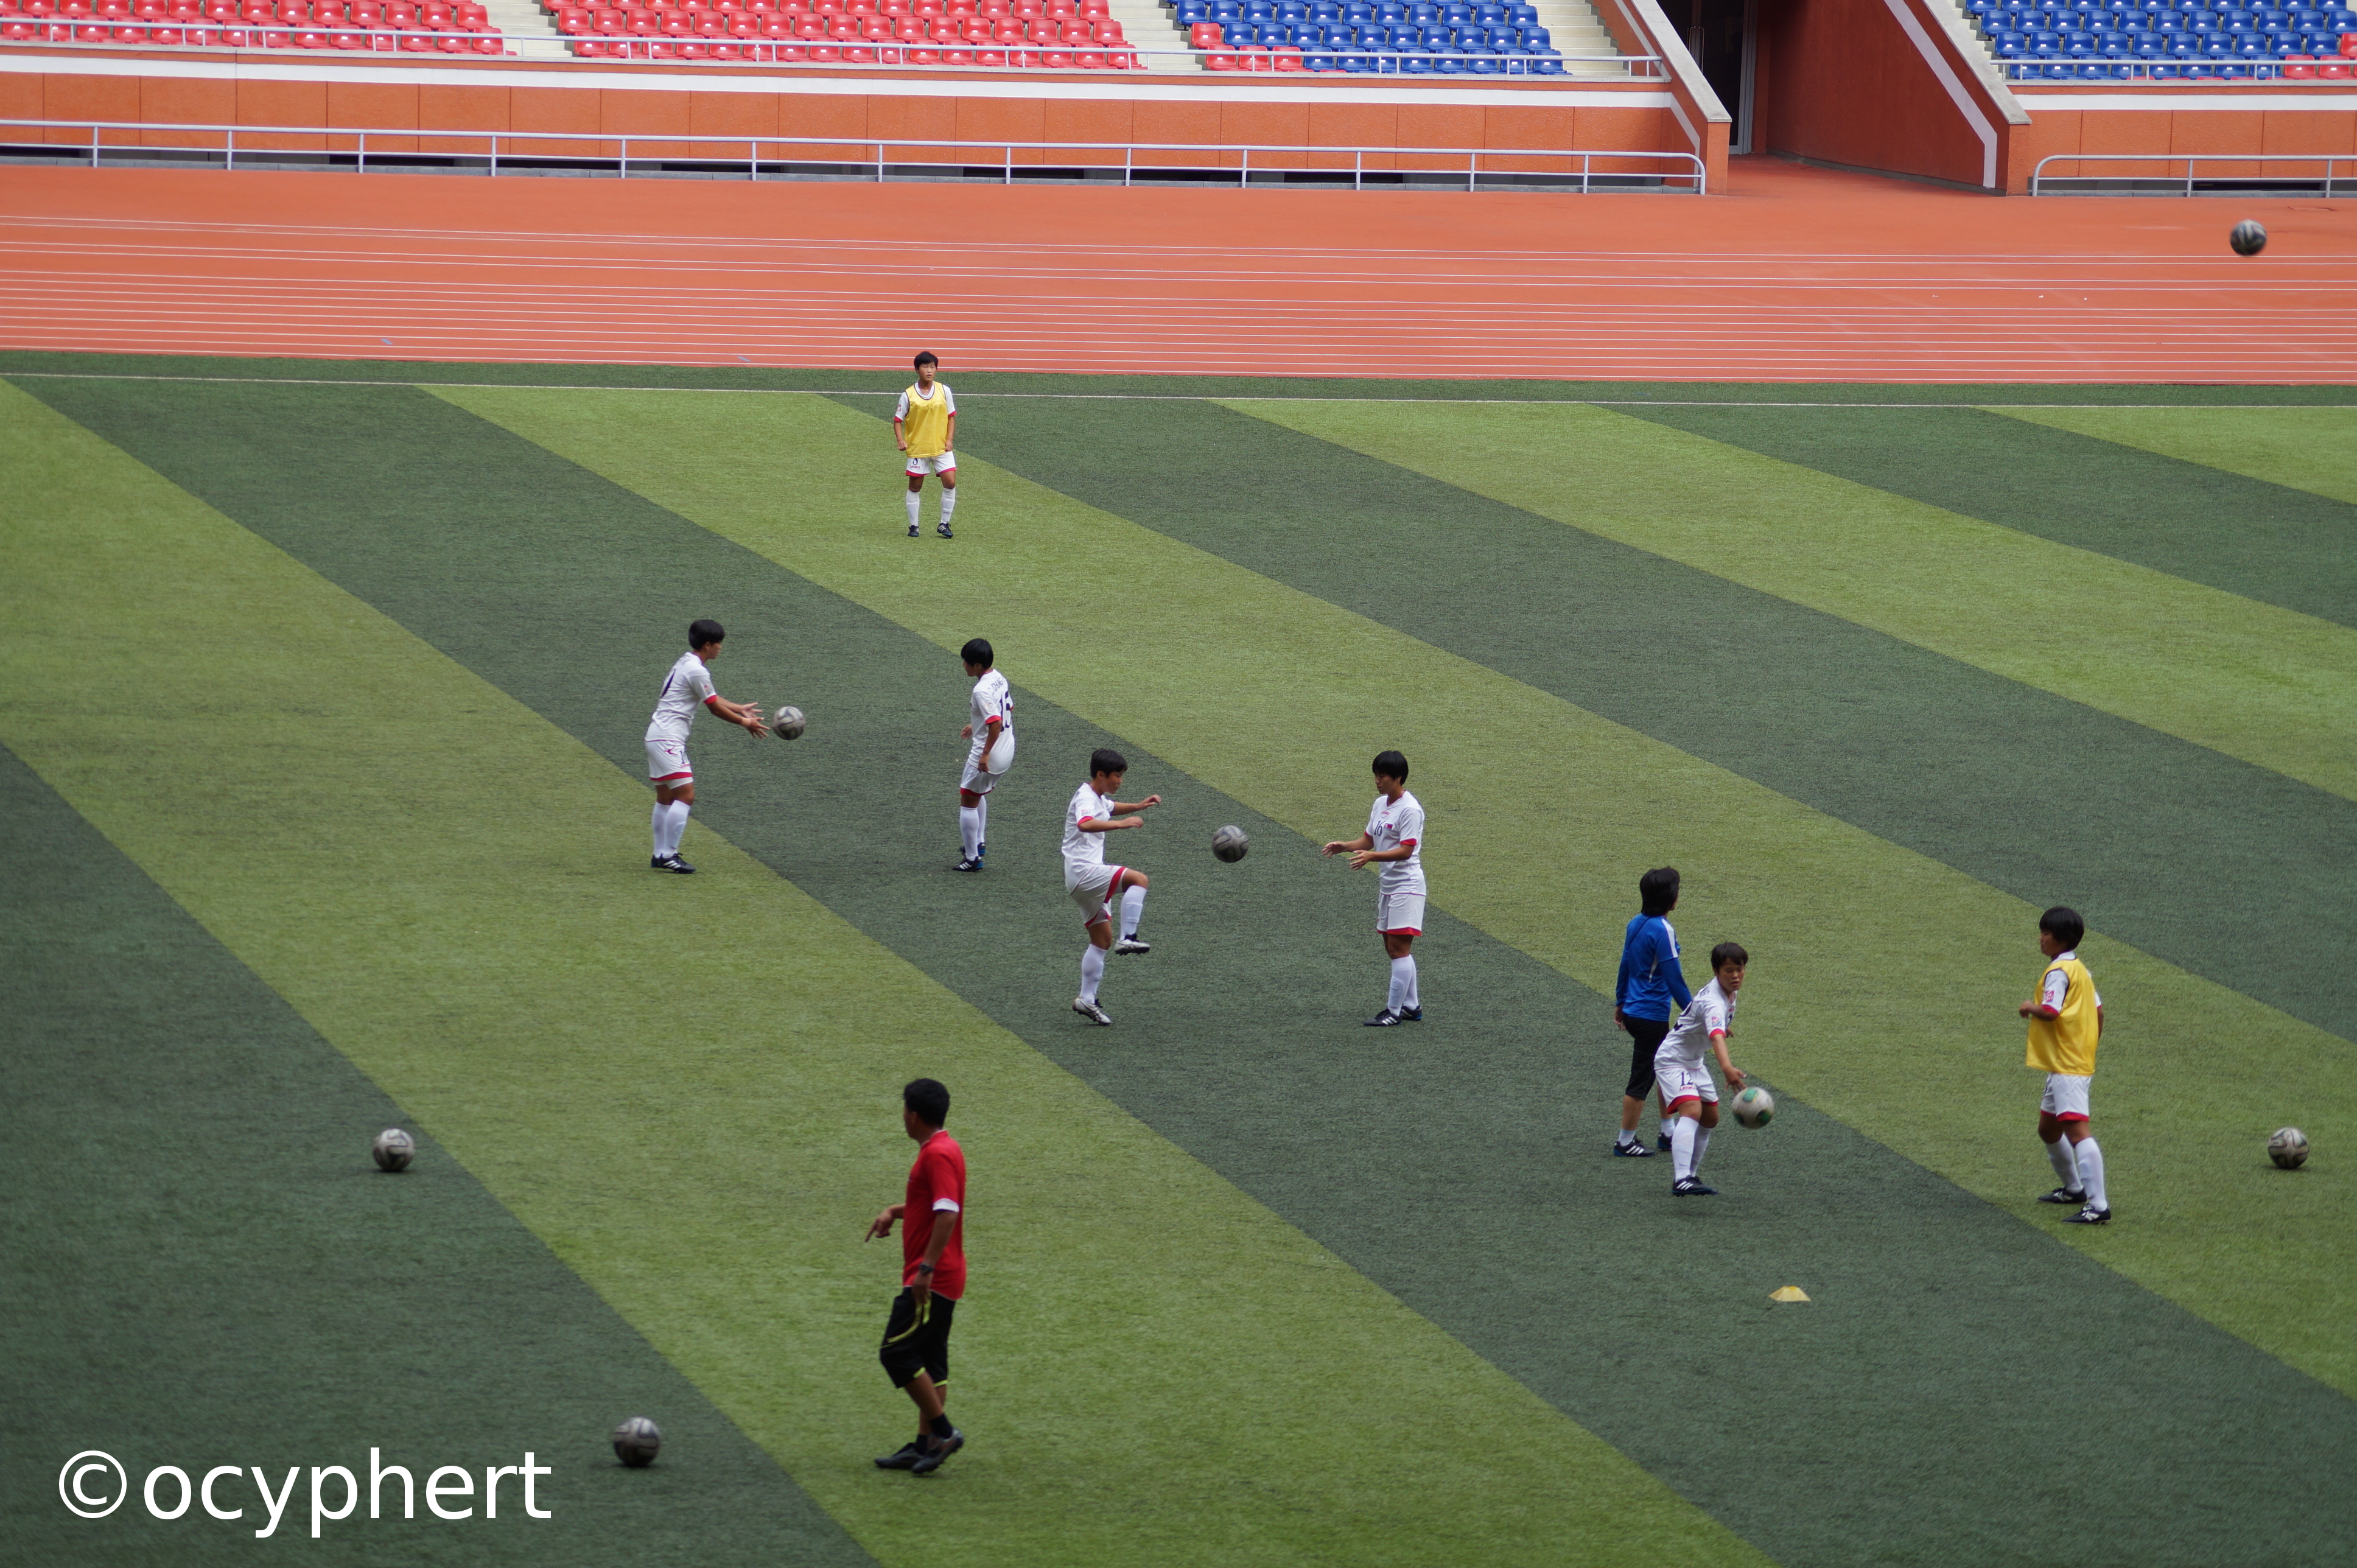 Auf dem Spielfeld des Stadions trainieren Fußballspielerinnen in Paaren und spielen sich Bälle hin und her.